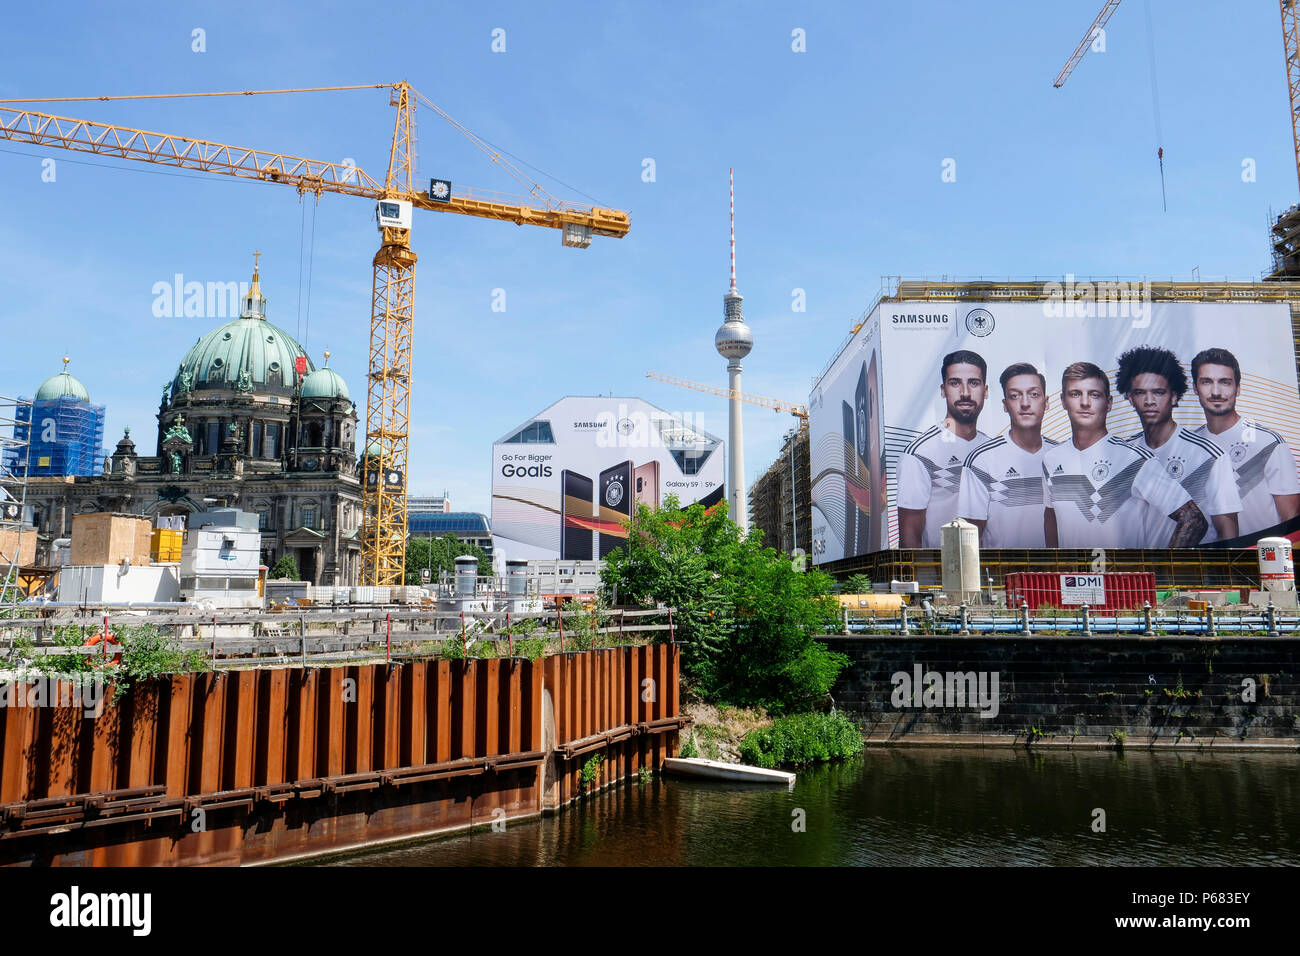 Deutschland, Berlin, große Samsung Werbung mit der Deutschen Fußball-Nationalmannschaft während der FIFA-WM 2018 in Russland Stockfoto